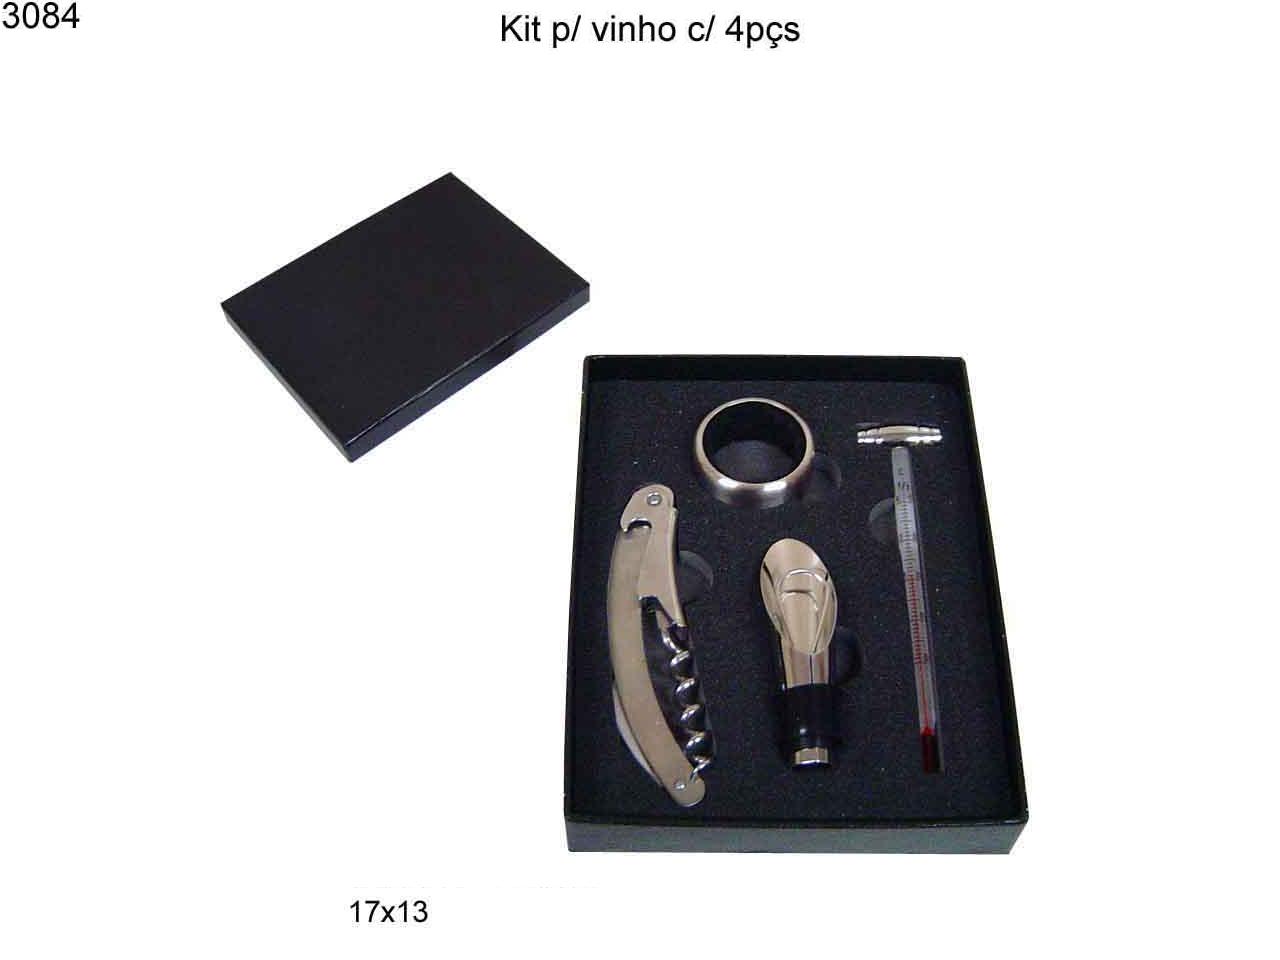 Kit p/ vinho c/ 4 peças (3084)